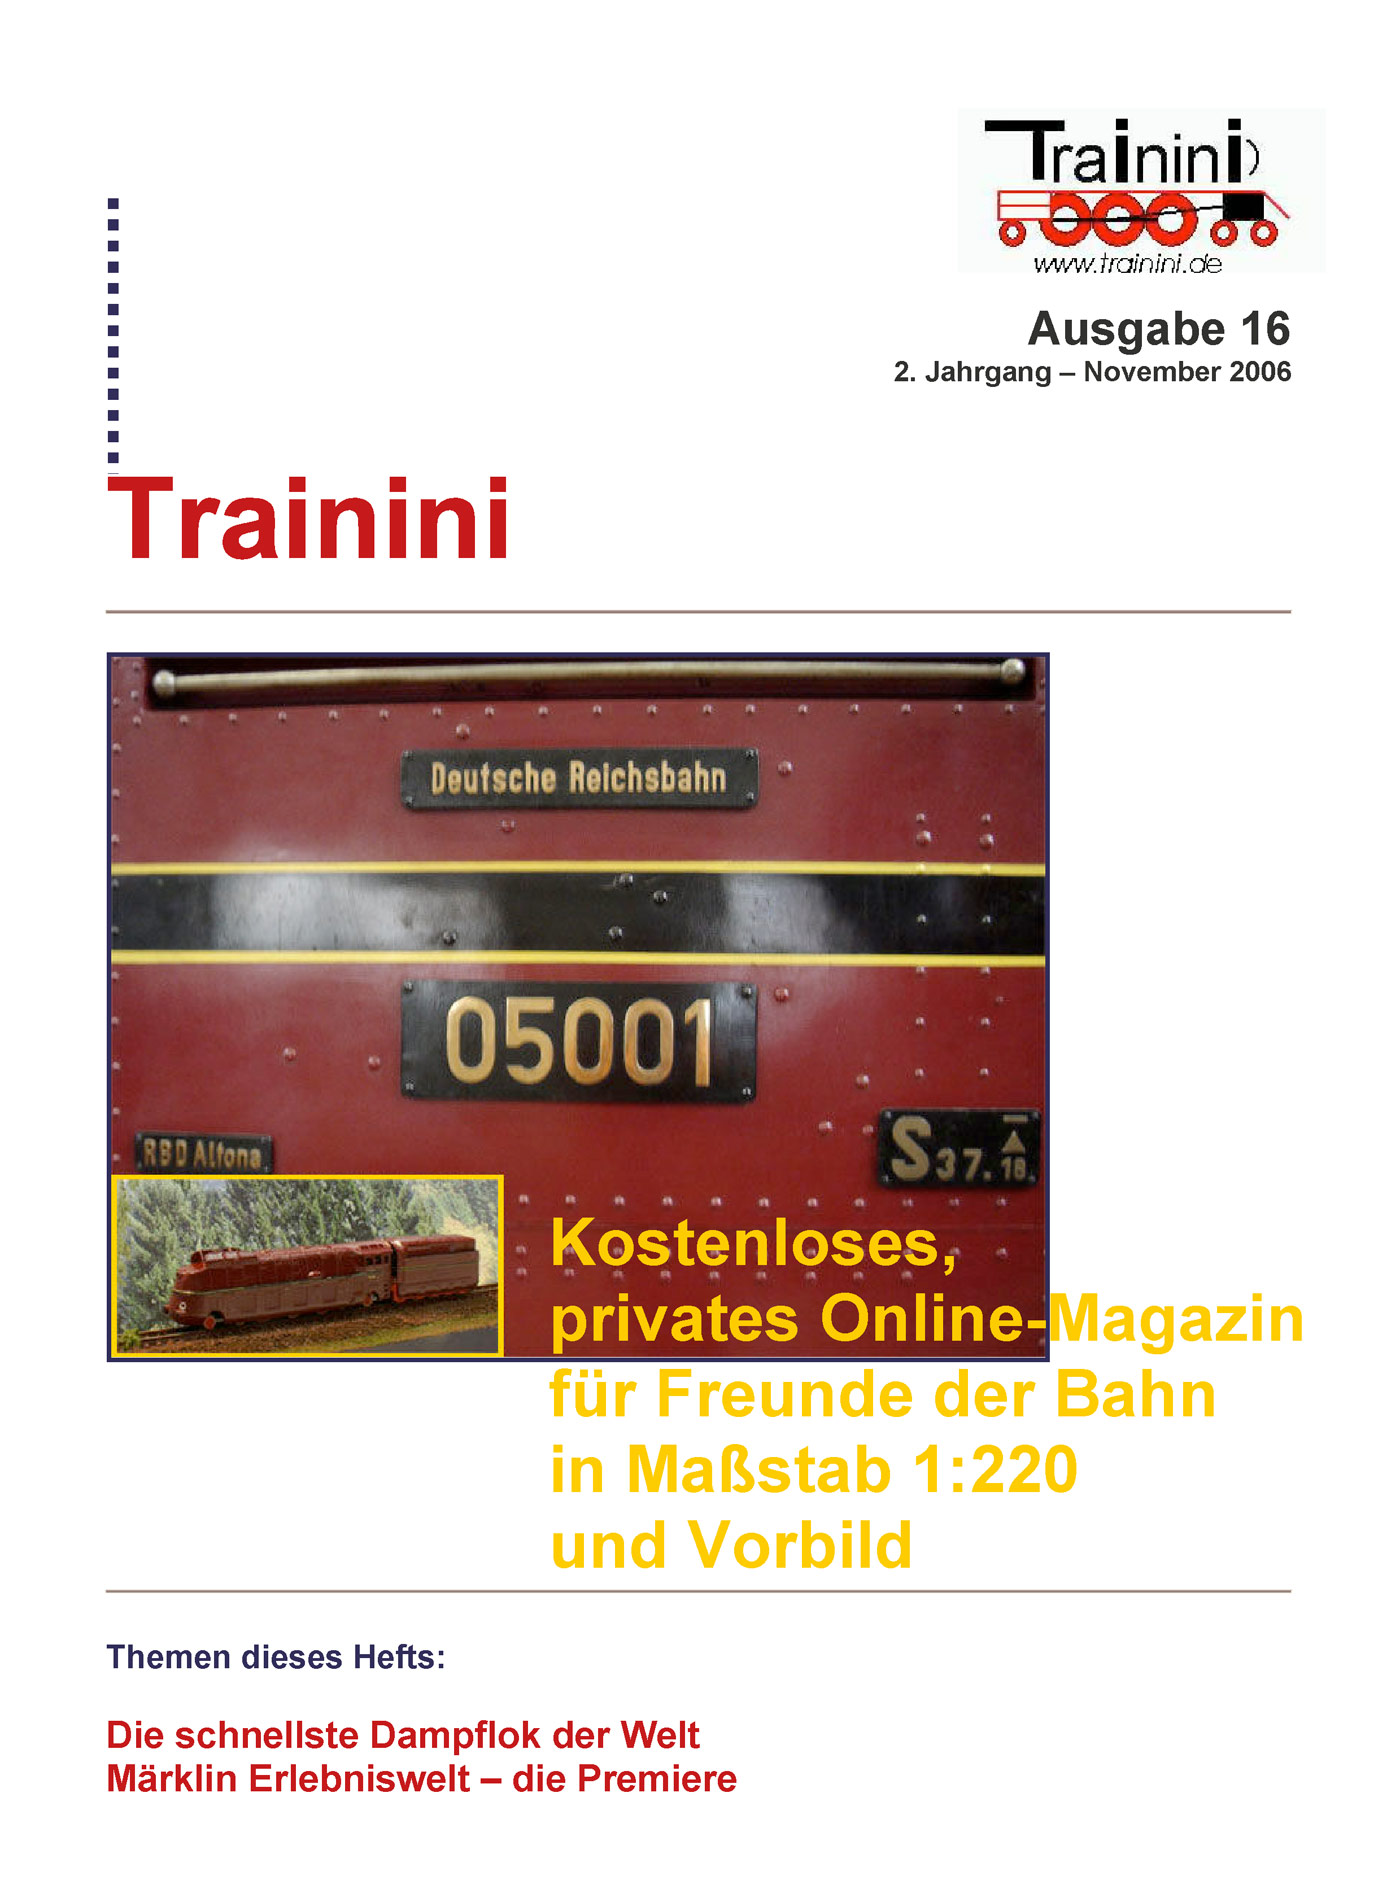 Trainini Ausgabe November 2006